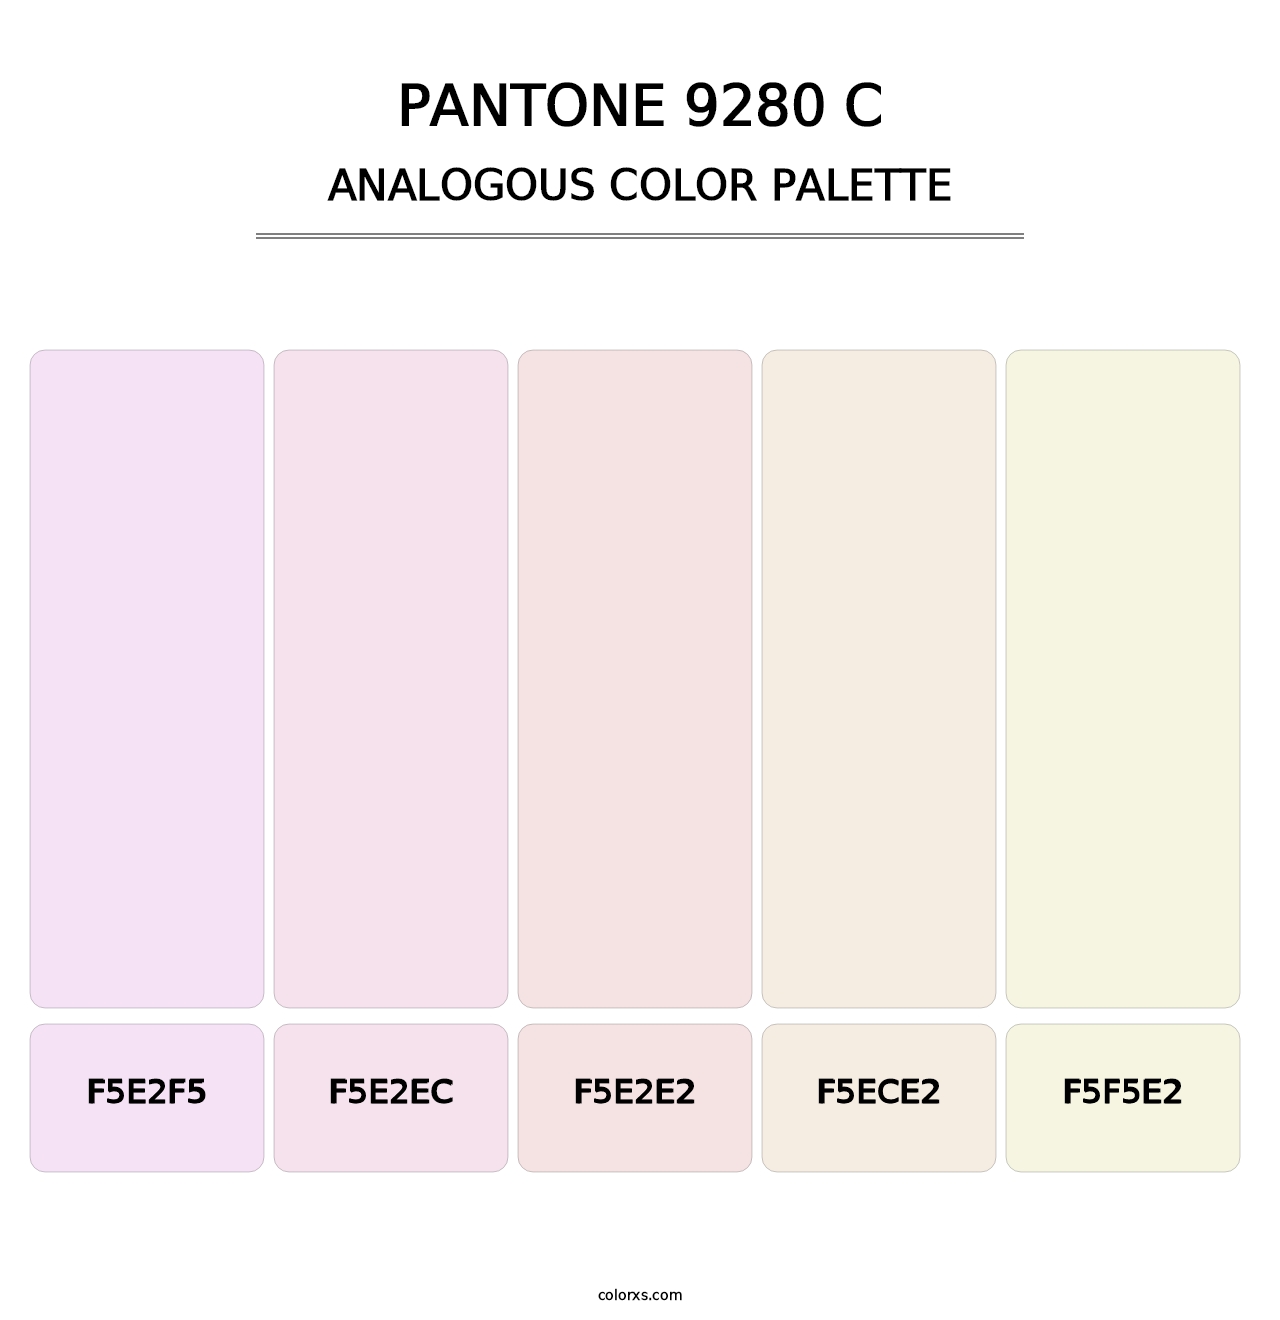 PANTONE 9280 C - Analogous Color Palette